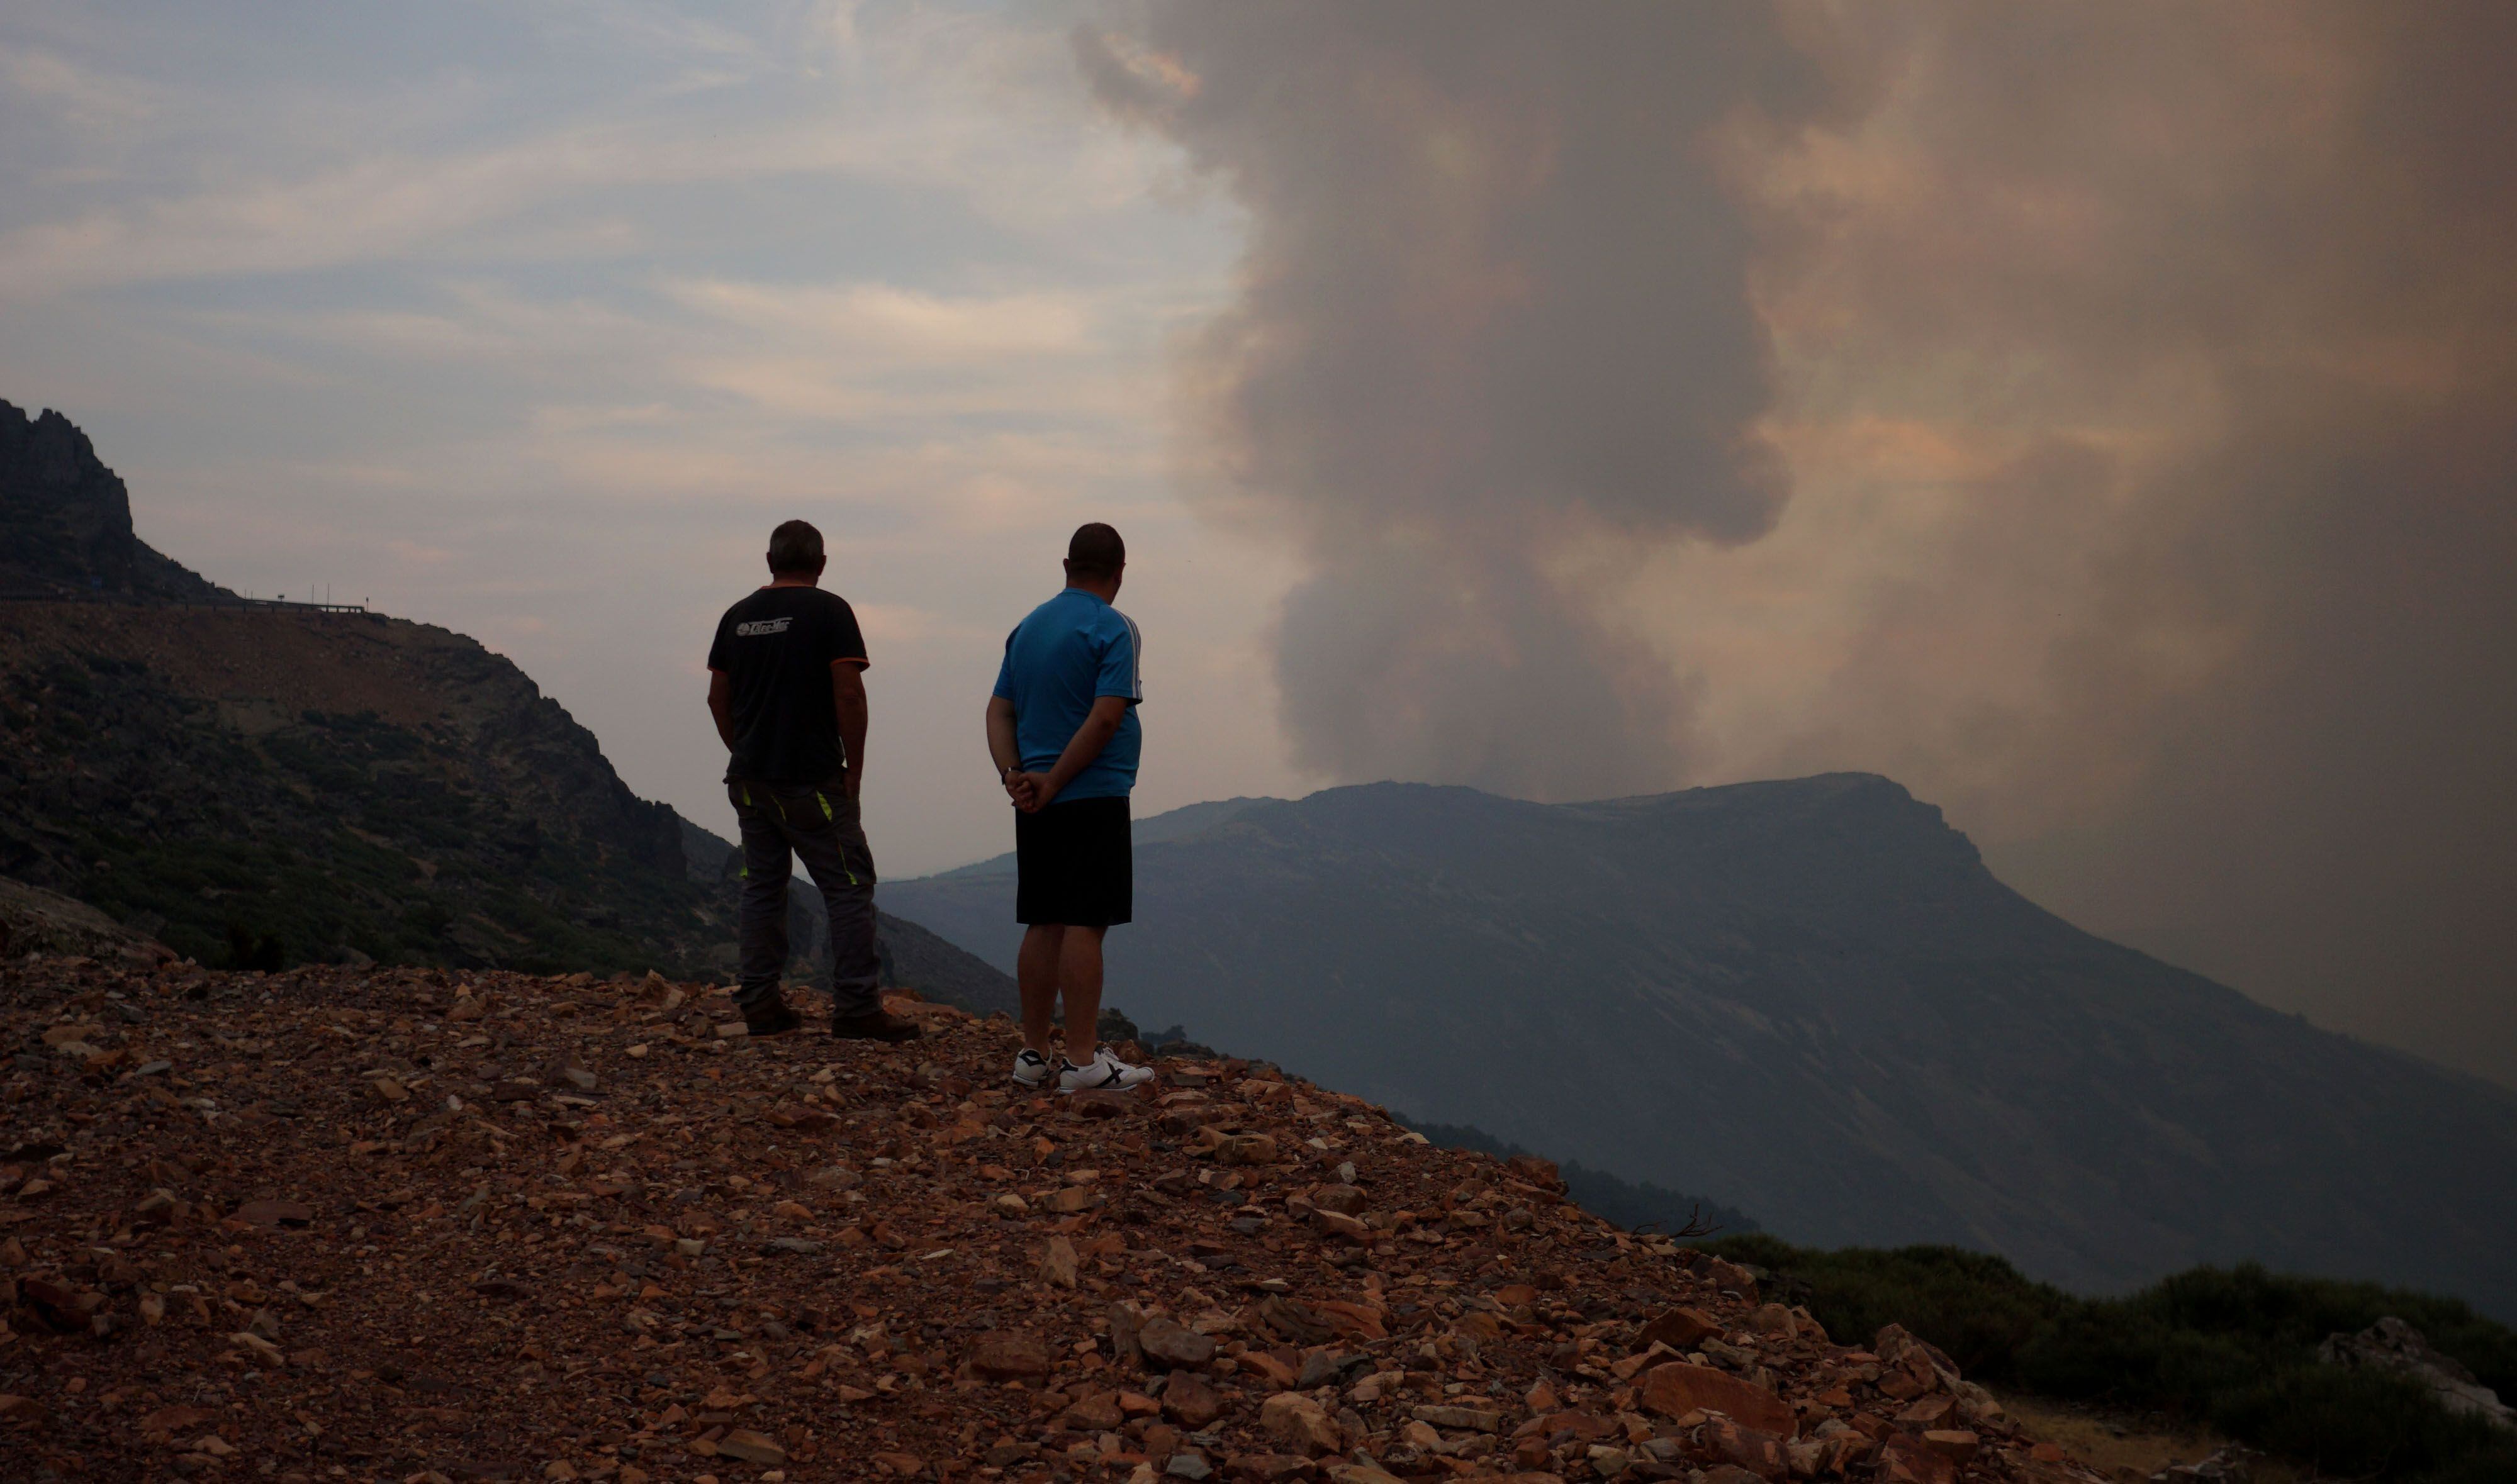 Dos hombres observan el incendio en el mirador de la Peña de Francia mientras uno de ellos recuerda el fuego que arrasó la zona hace cuarenta años.